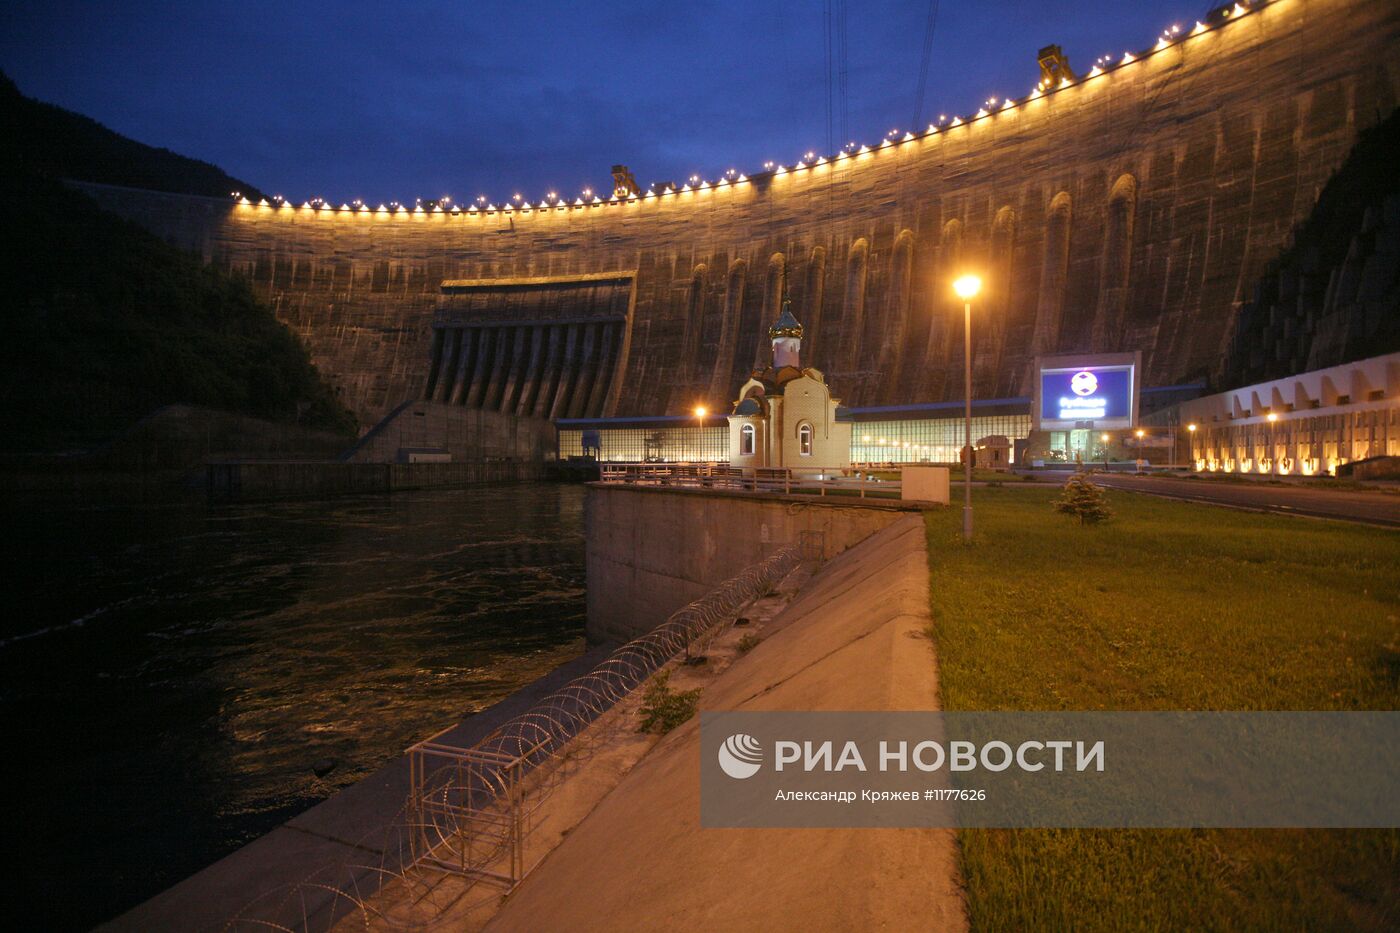 Работы по восстановлению Саяно-Шушенской ГЭС